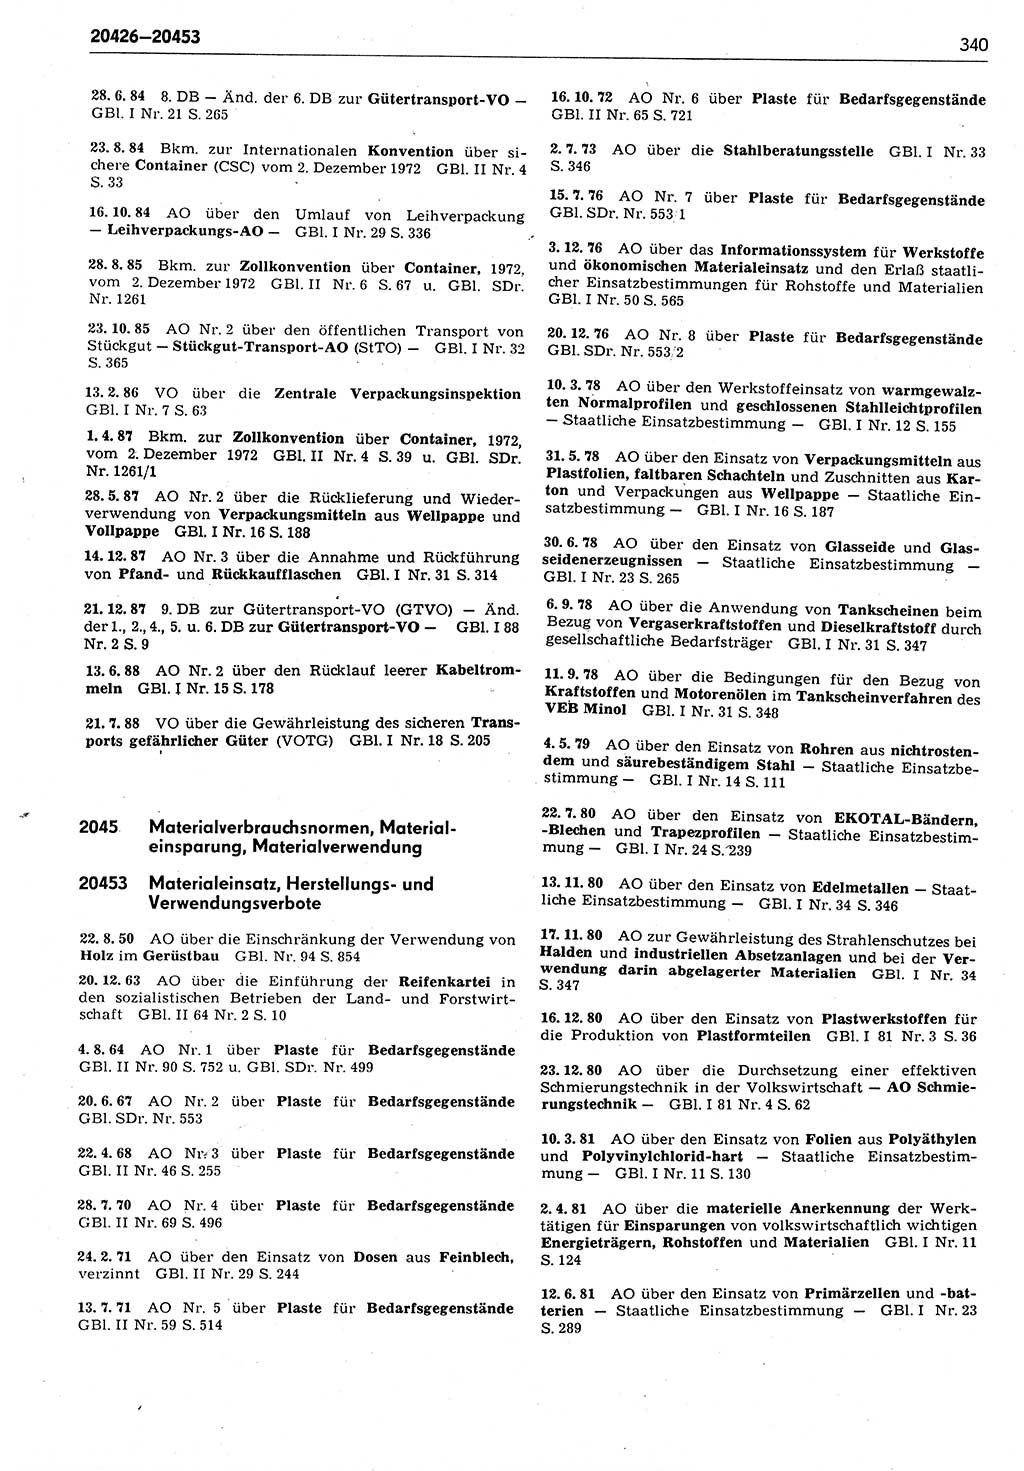 Das geltende Recht der Deutschen Demokratischen Republik (DDR) 1949-1988, Seite 340 (Gelt. R. DDR 1949-1988, S. 340)